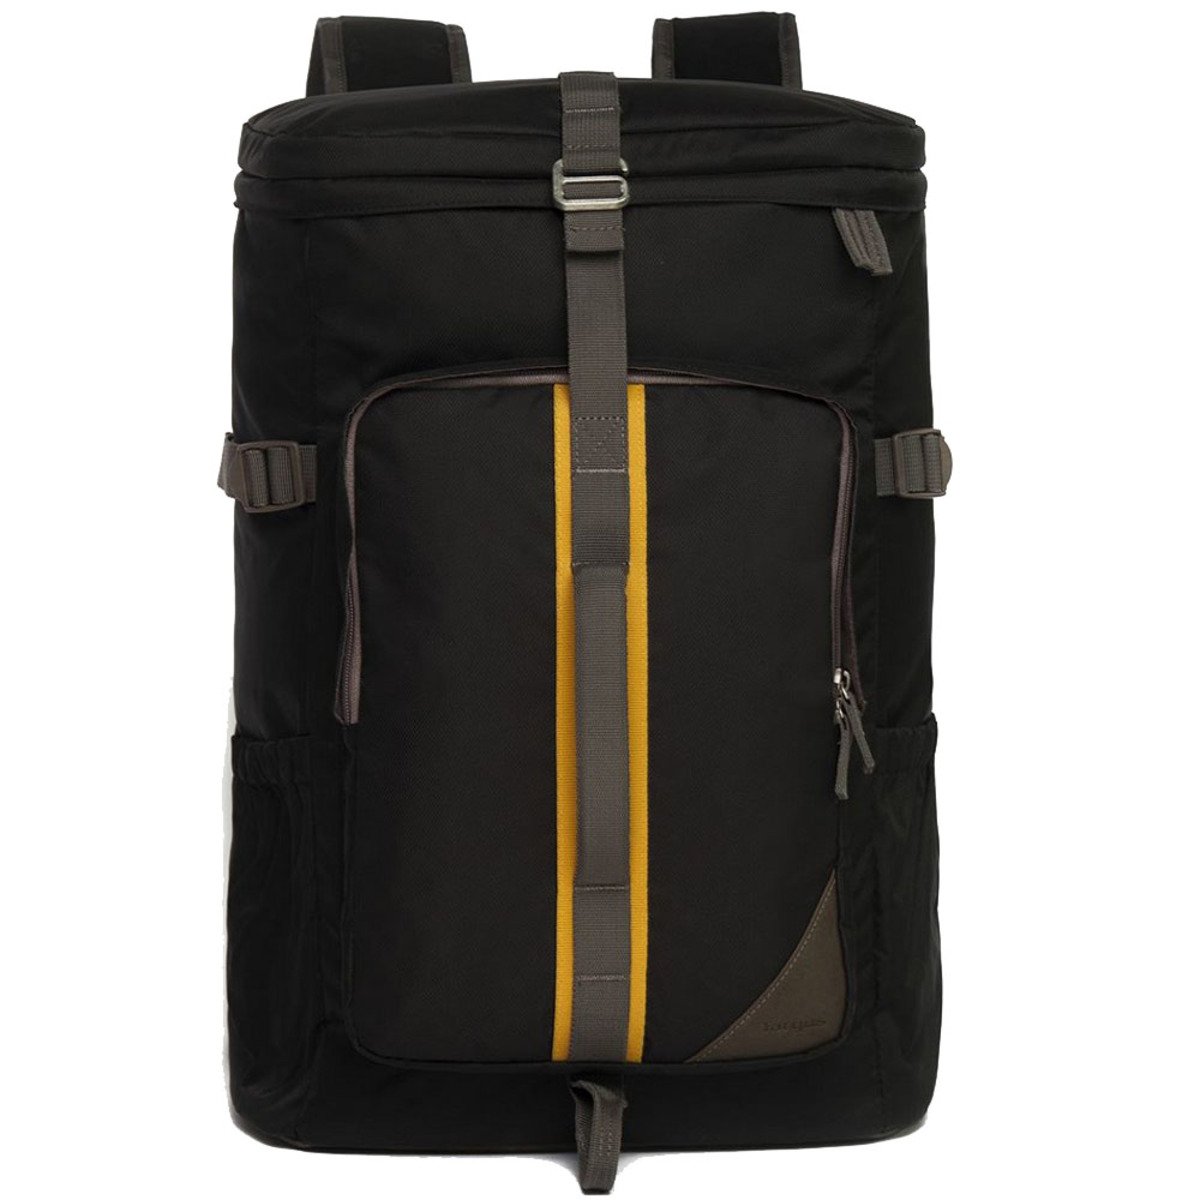 Targus Seoul Laptop Backpack 15.6inch TSB845 Black